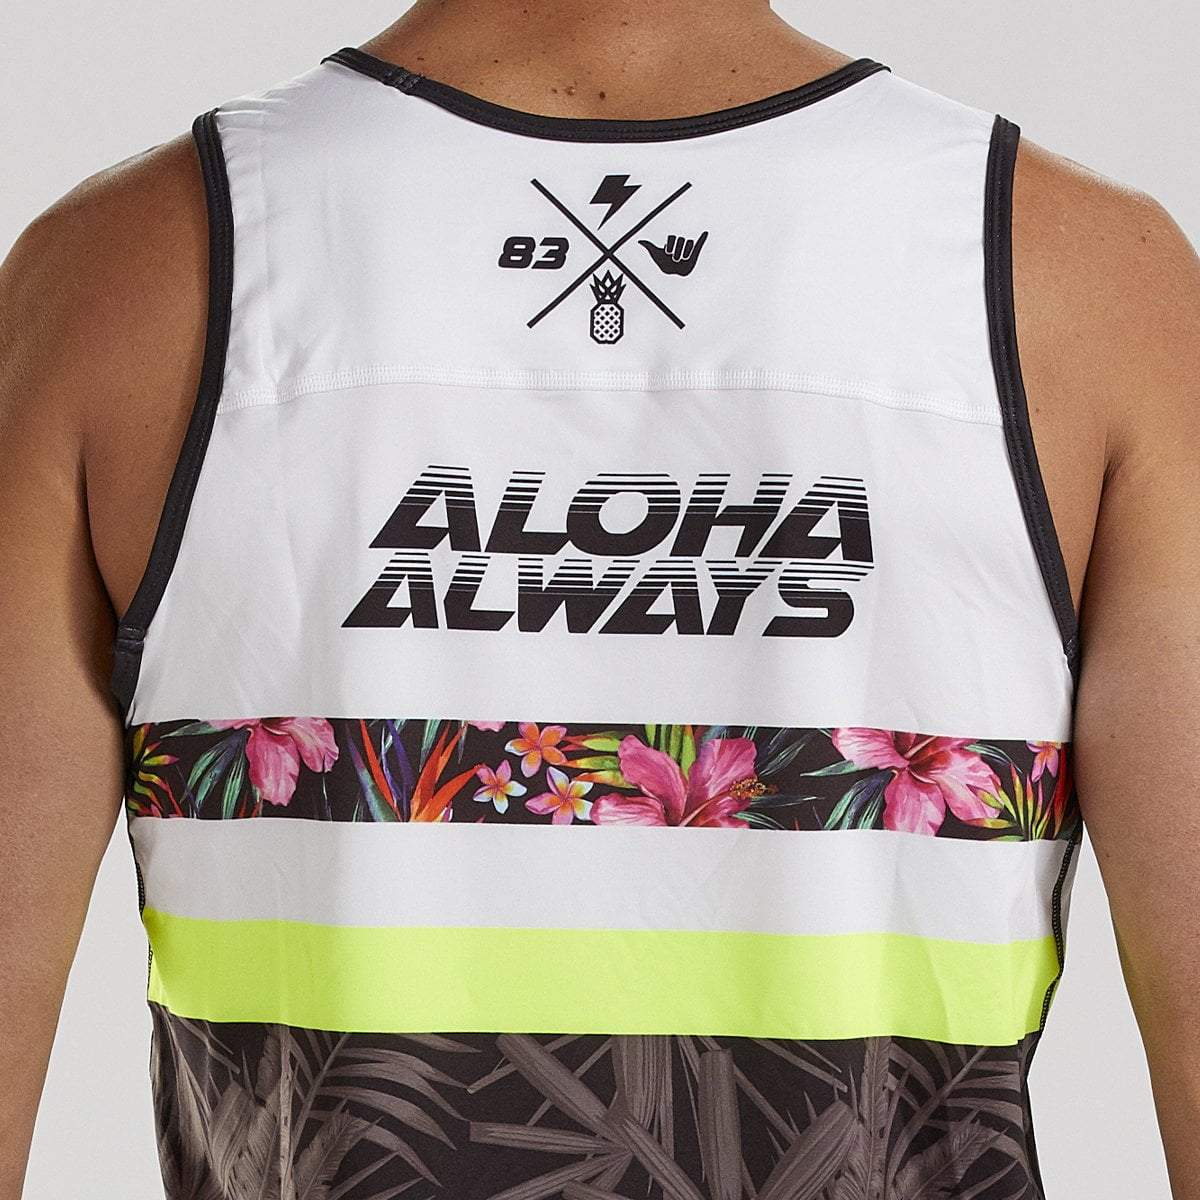 Men's Ltd Run Singlet - Aloha Always